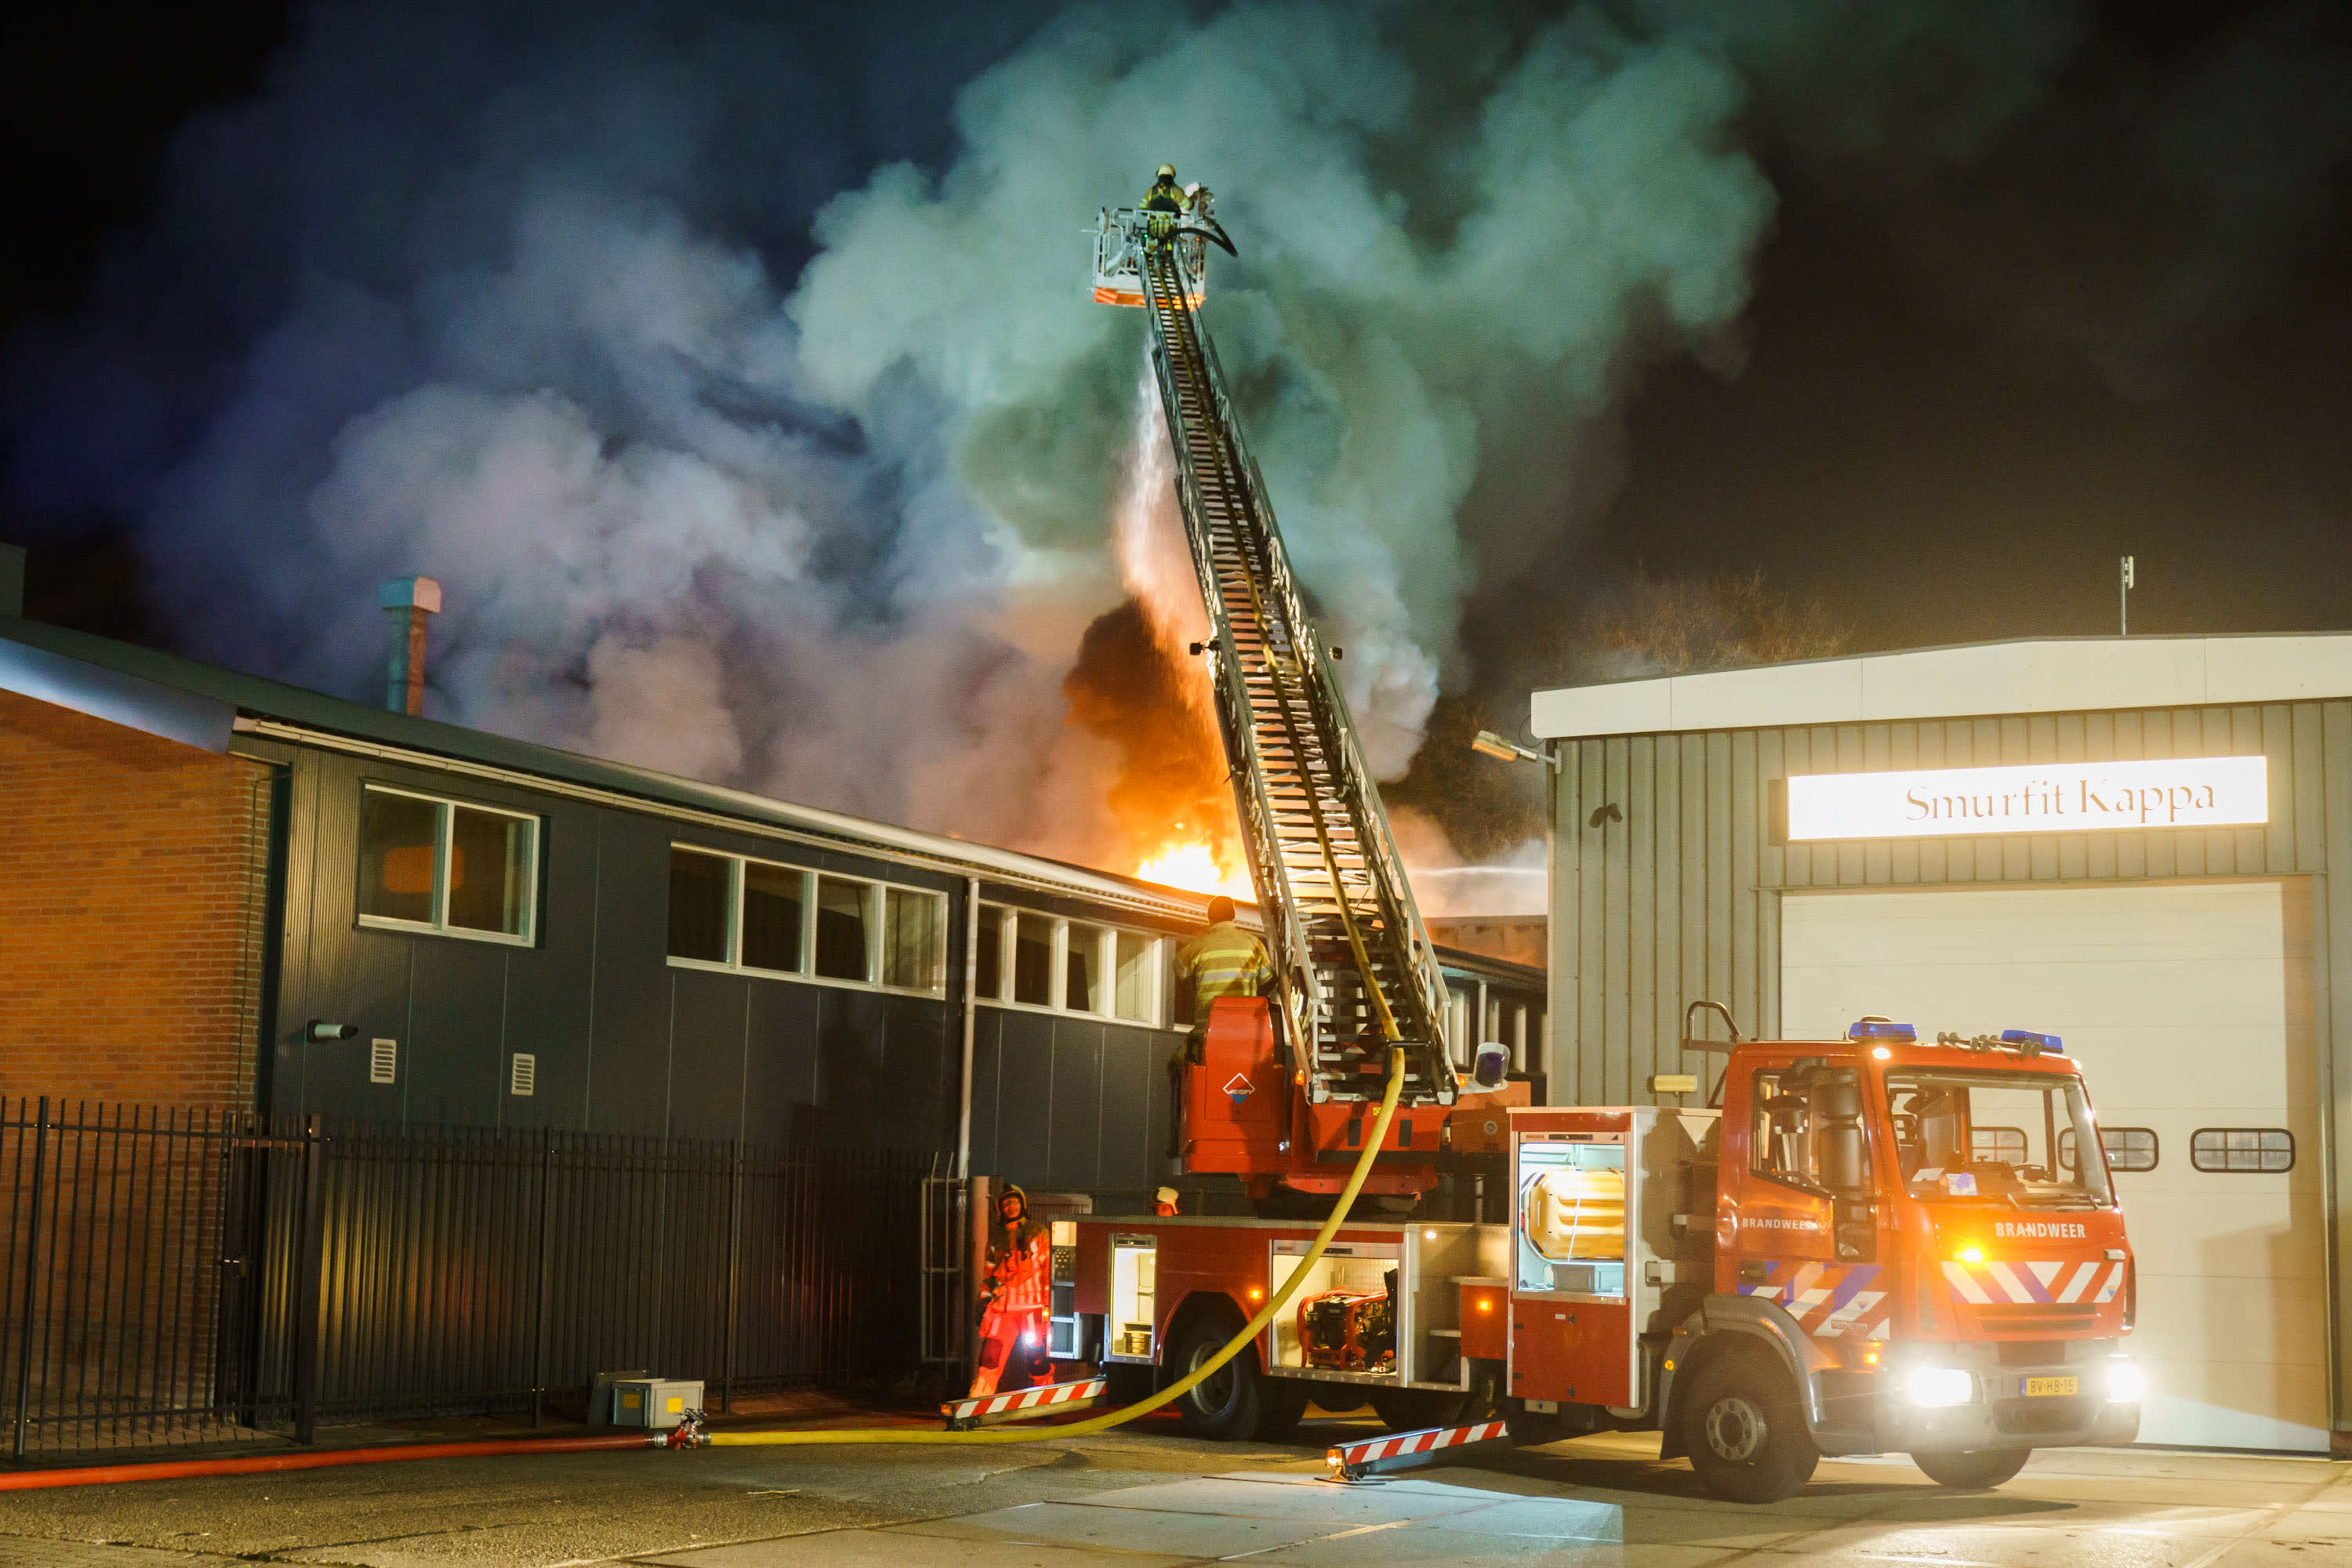 Autobedrijf in Soest volledig verwoest door brand